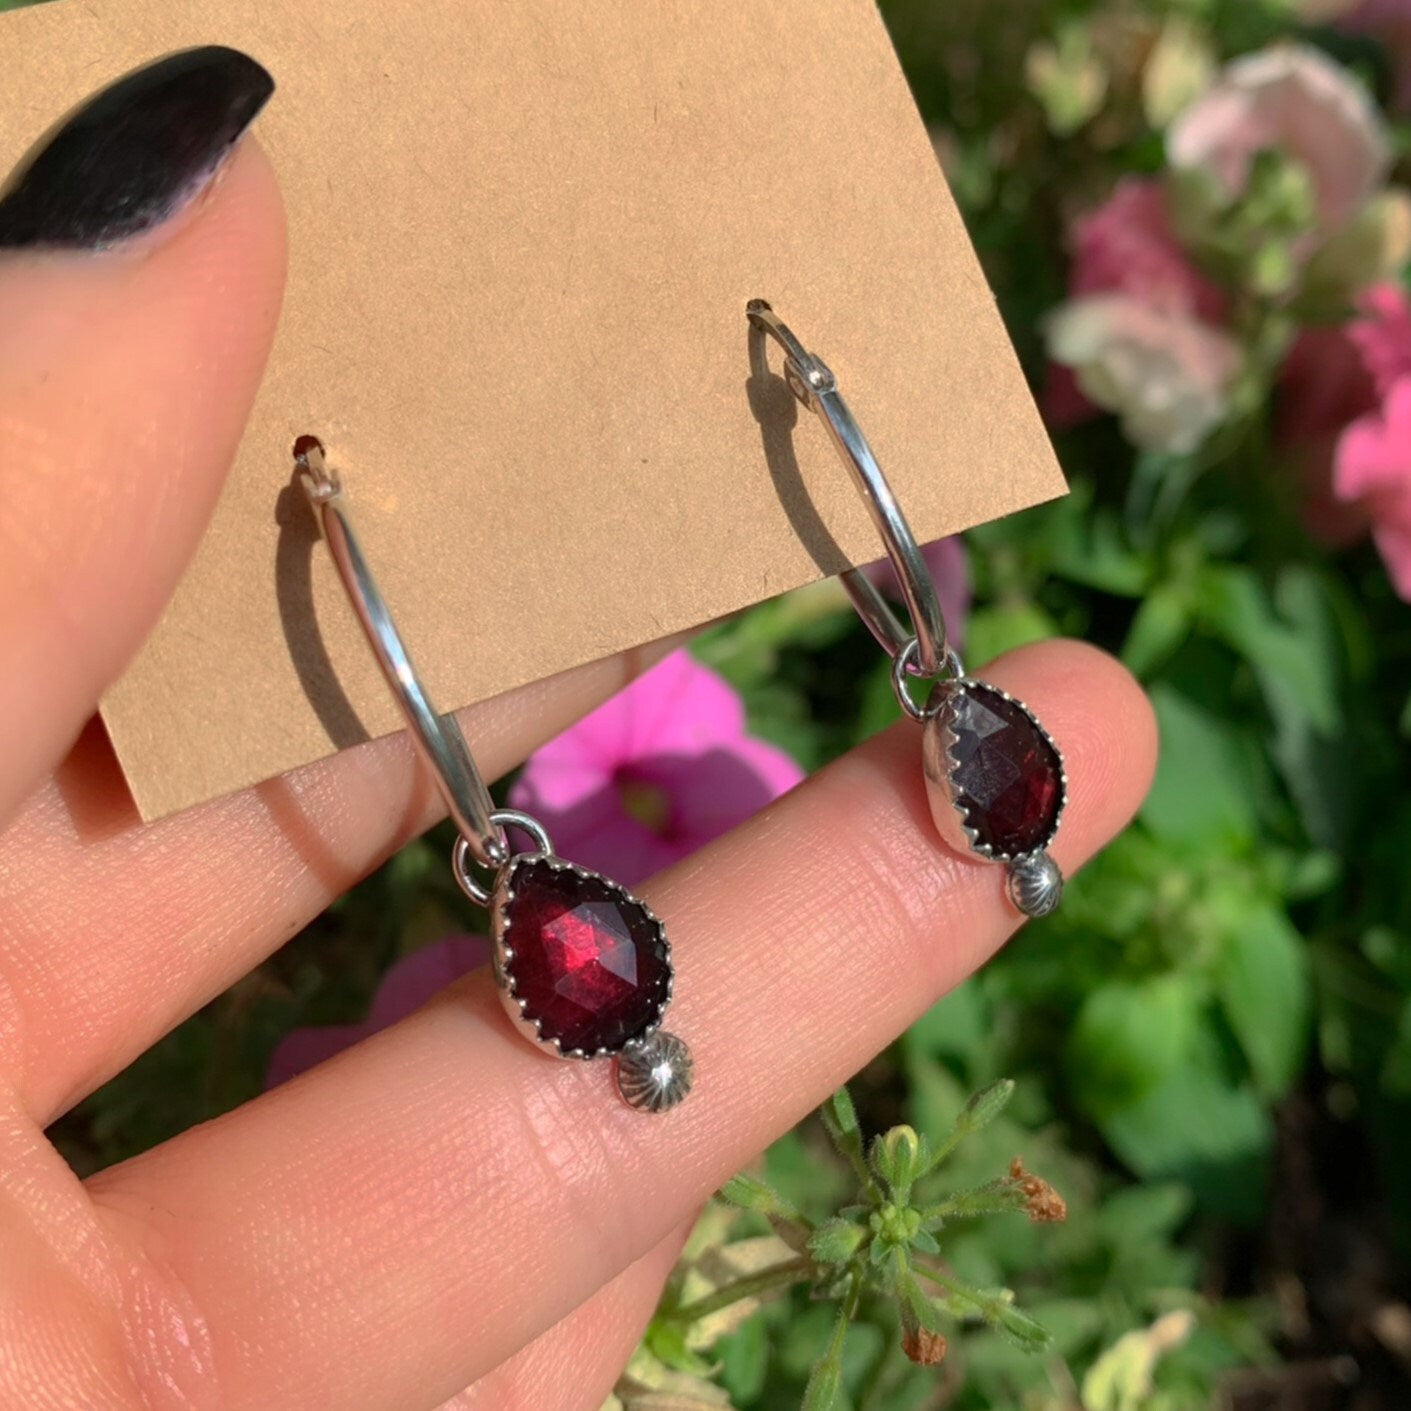 Rose Cut Rhodonite Garnet Earrings - Sterling Silver - Faceted Garnet Hoop Earrings - Garnet Sleeper Earrings, Pink Garnet Hoops, Red Garnet